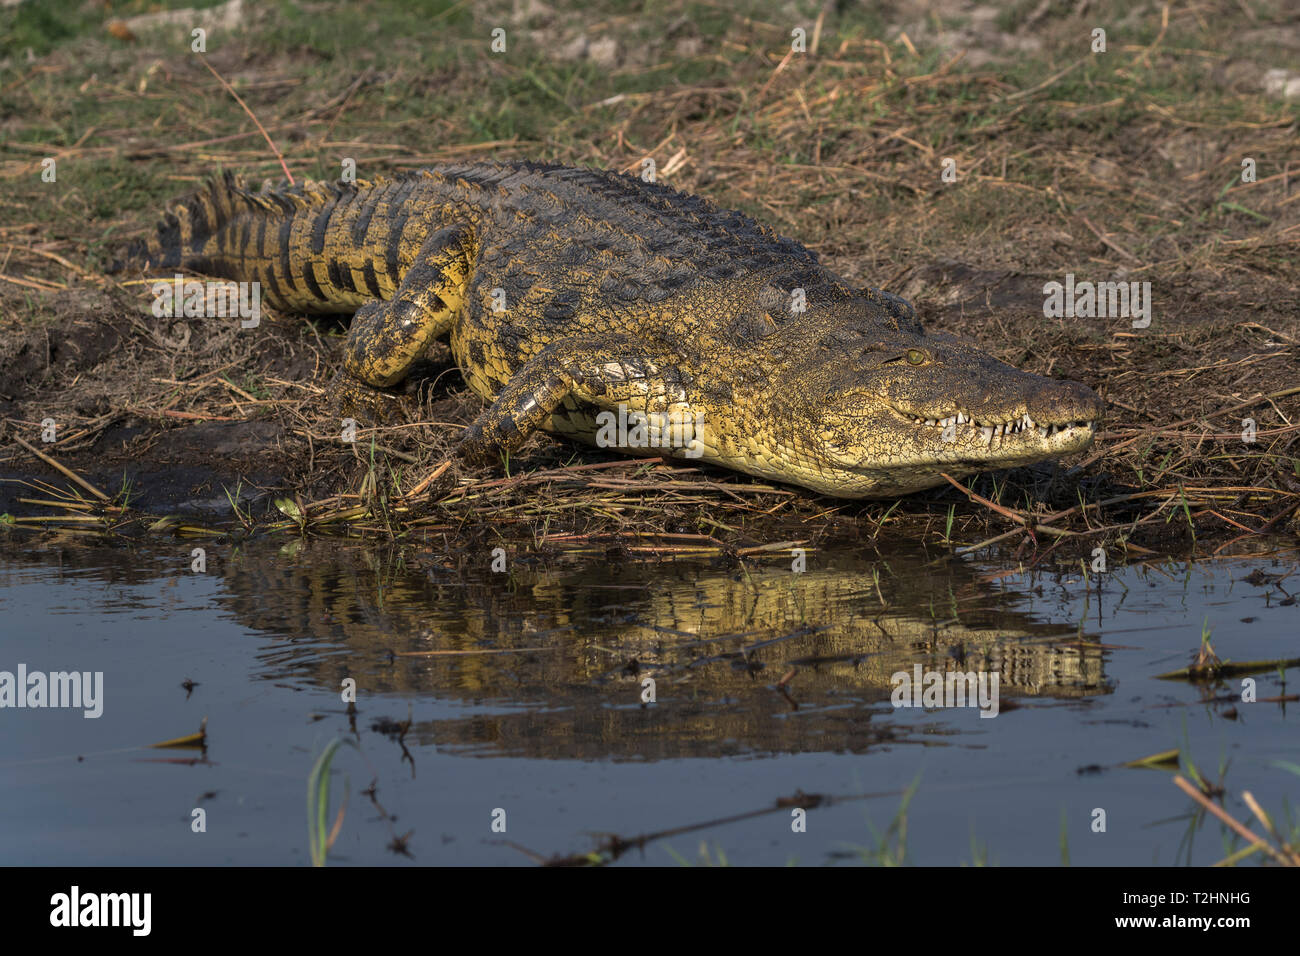 El cocodrilo del Nilo, Crocodylus niloticus, río Chobe, Botswana, África austral Foto de stock